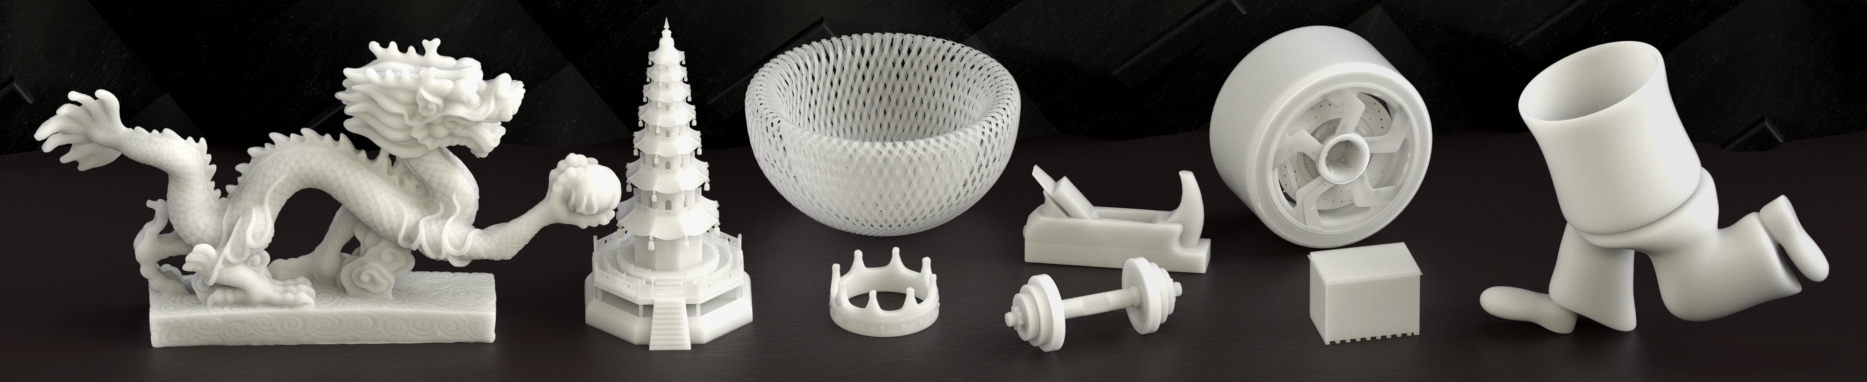 Online 3D nyomtatási szolgáltatások